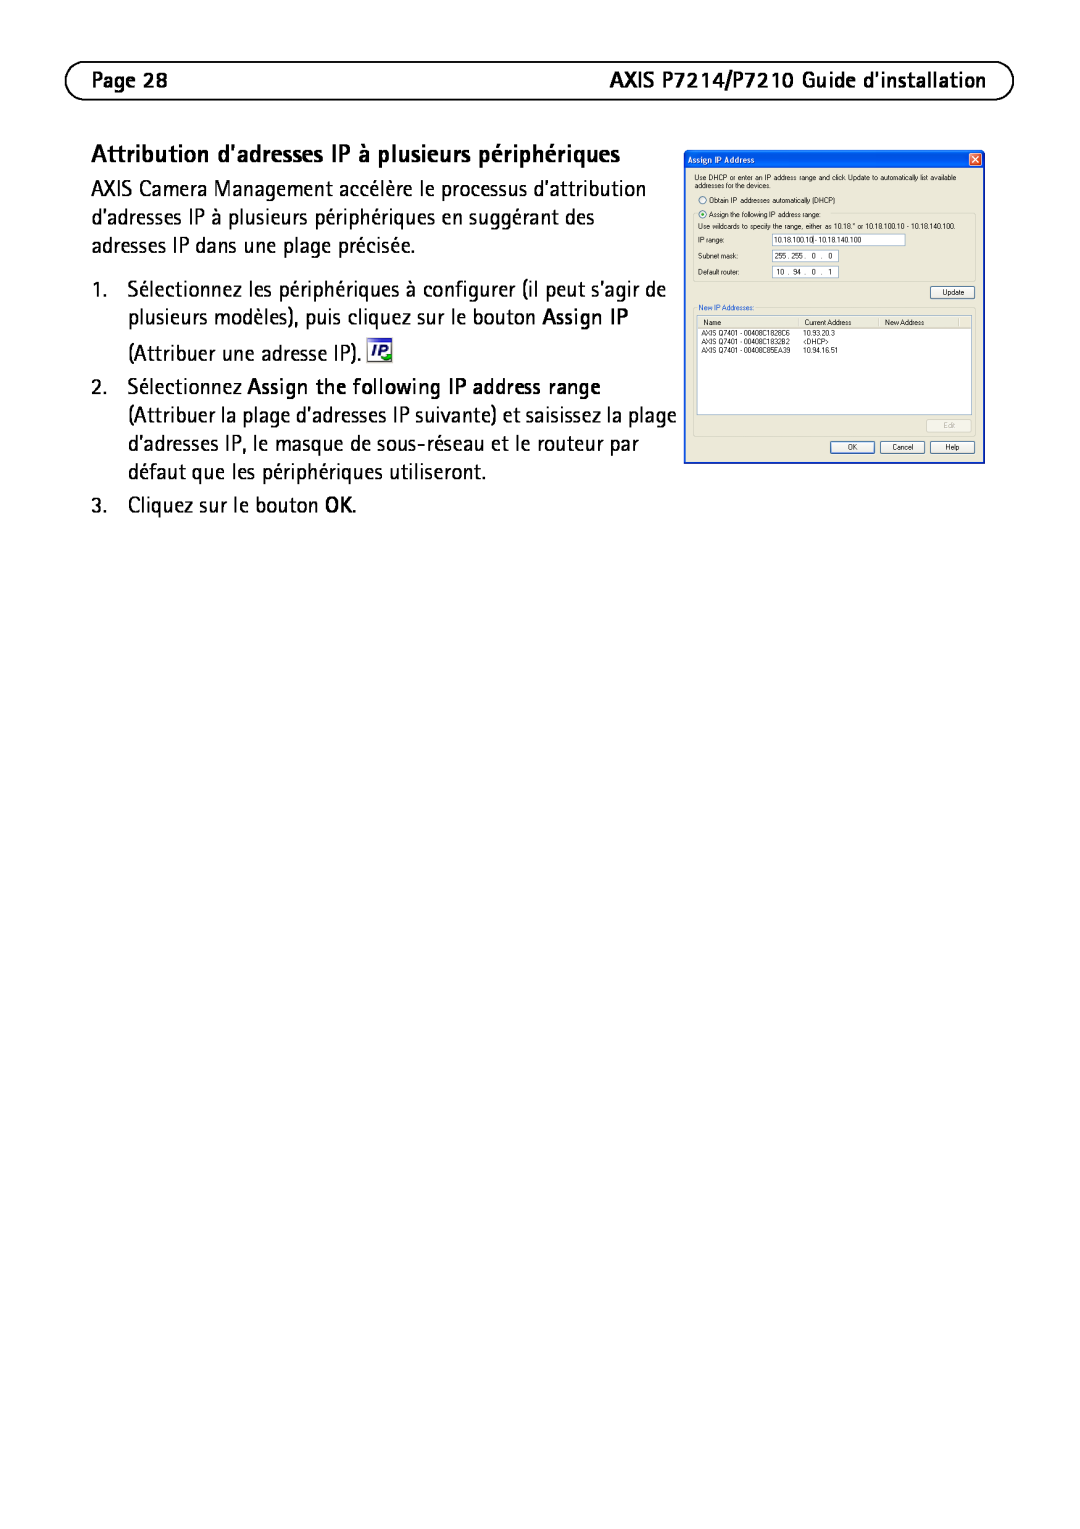 Axis Communications P7214/P7210 manual Attribution d’adresses IP à plusieurs périphériques, Page 